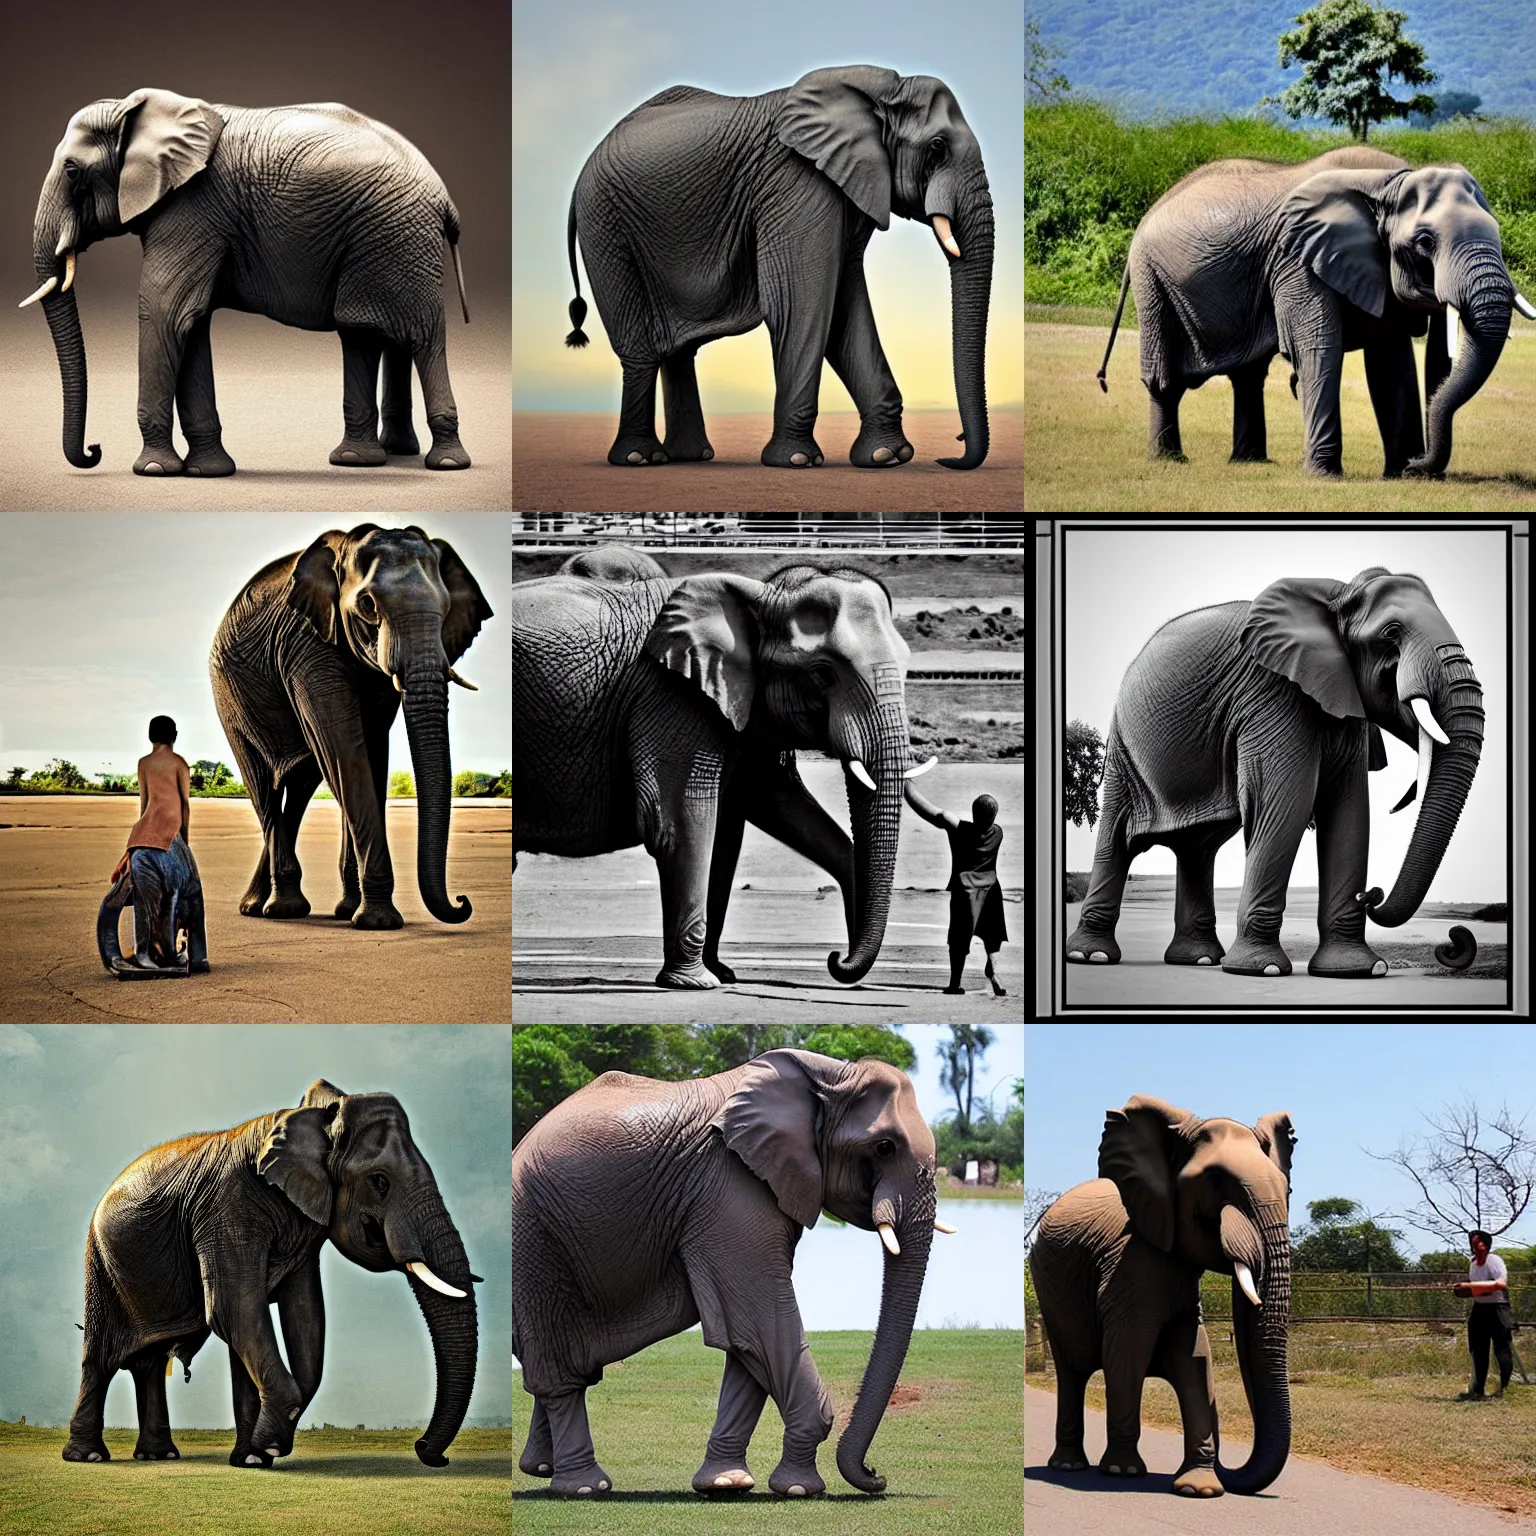 Prompt: elephant strongman